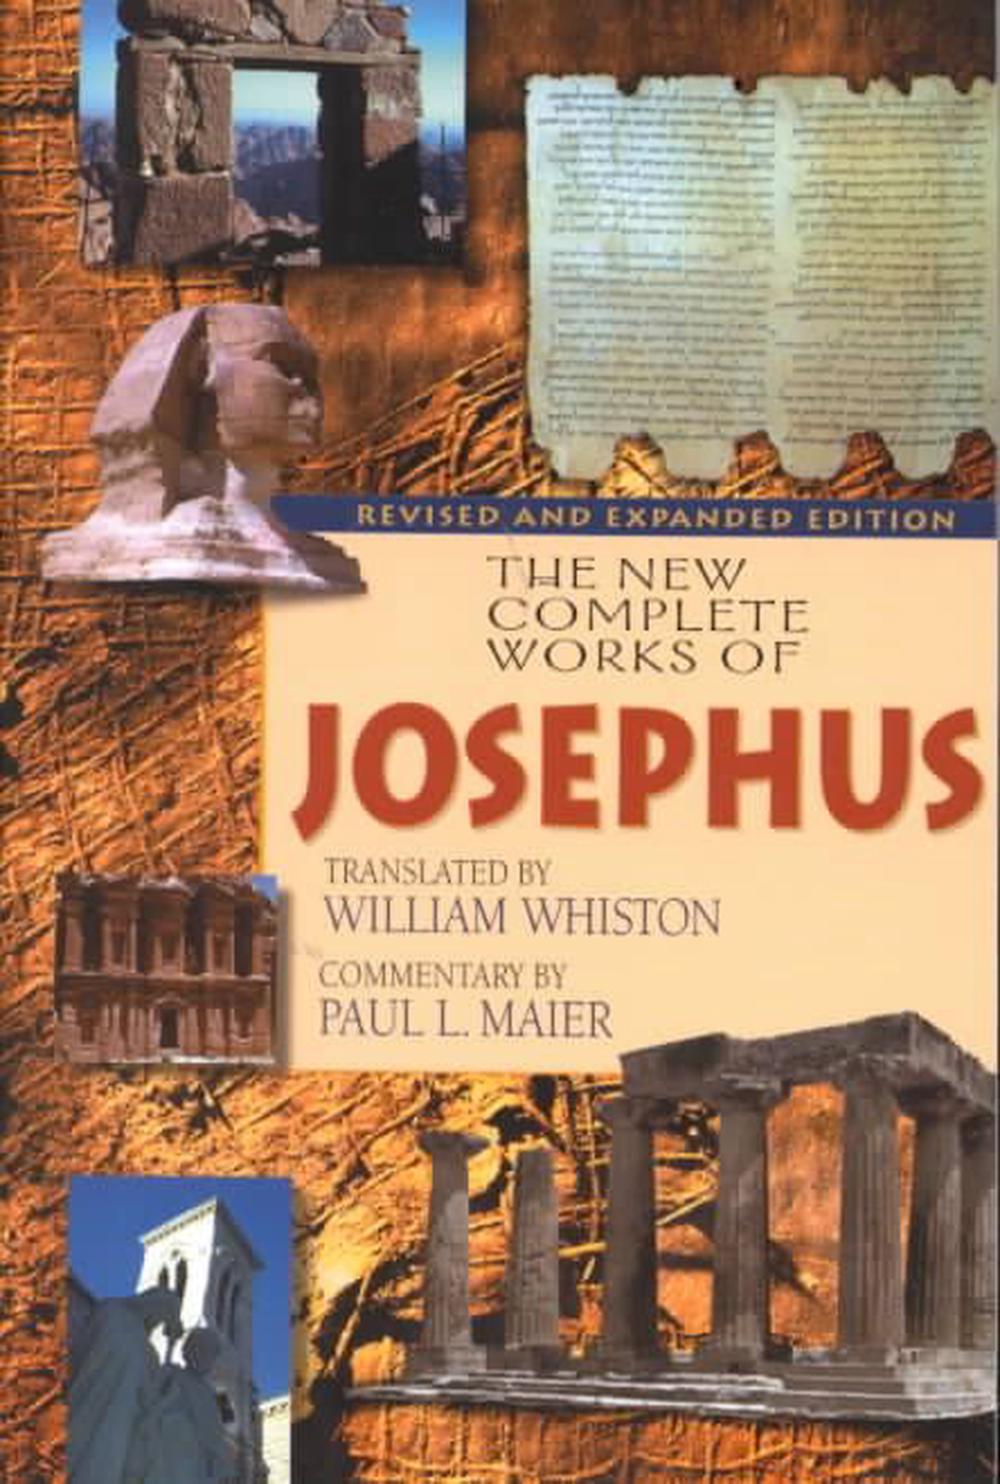 The Complete Works of Flavius Josephus by Flavius Josephus